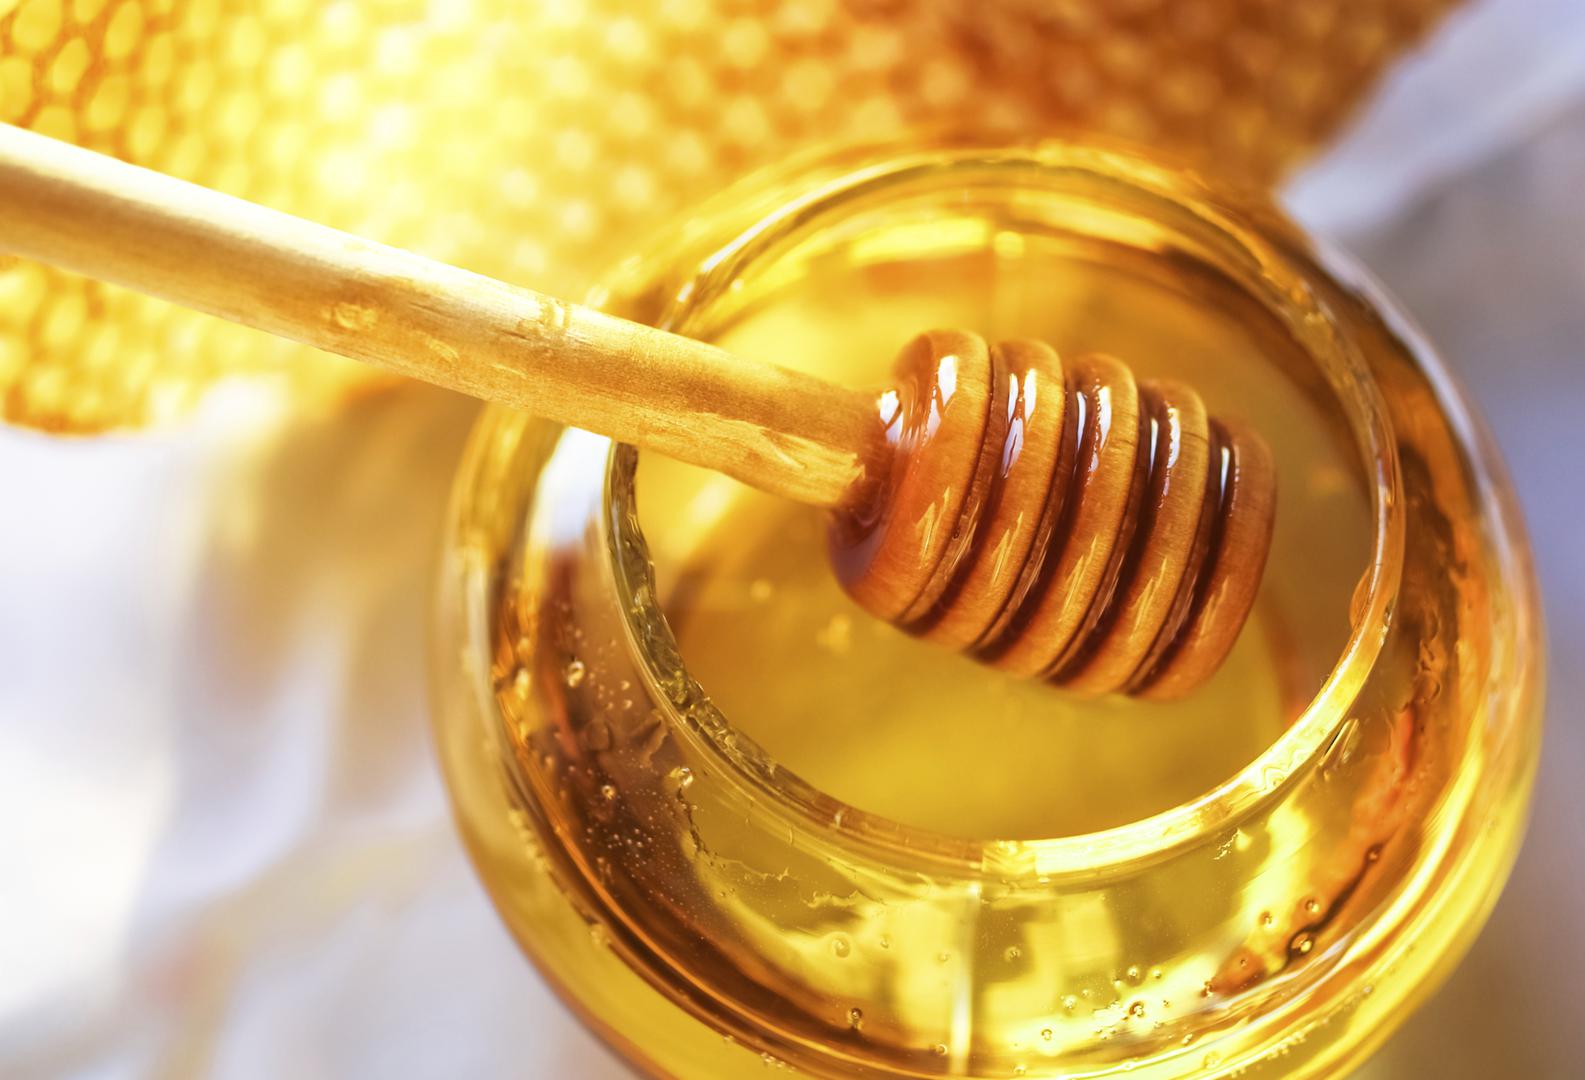 Stavite žlicu meda u vodu i ako ostane na dnu čaše, riječ je o pravom, čistom medu. "Lažni med" će se početi odmah otapati, odnosno miješati s vodom.